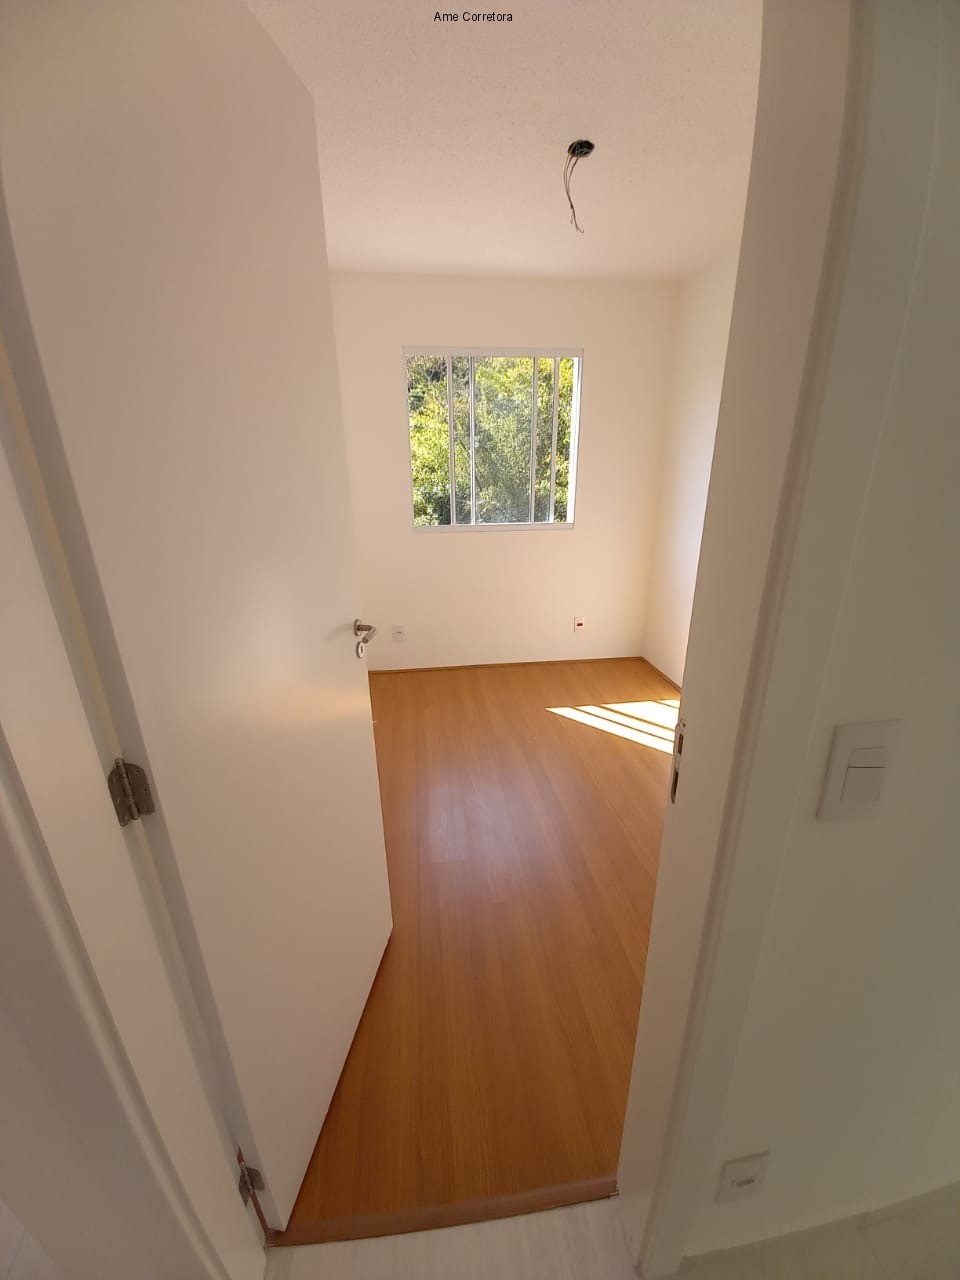 FOTO 12 - Apartamento 2 quartos à venda Rio de Janeiro,RJ - R$ 270.000 - AP00389 - 13